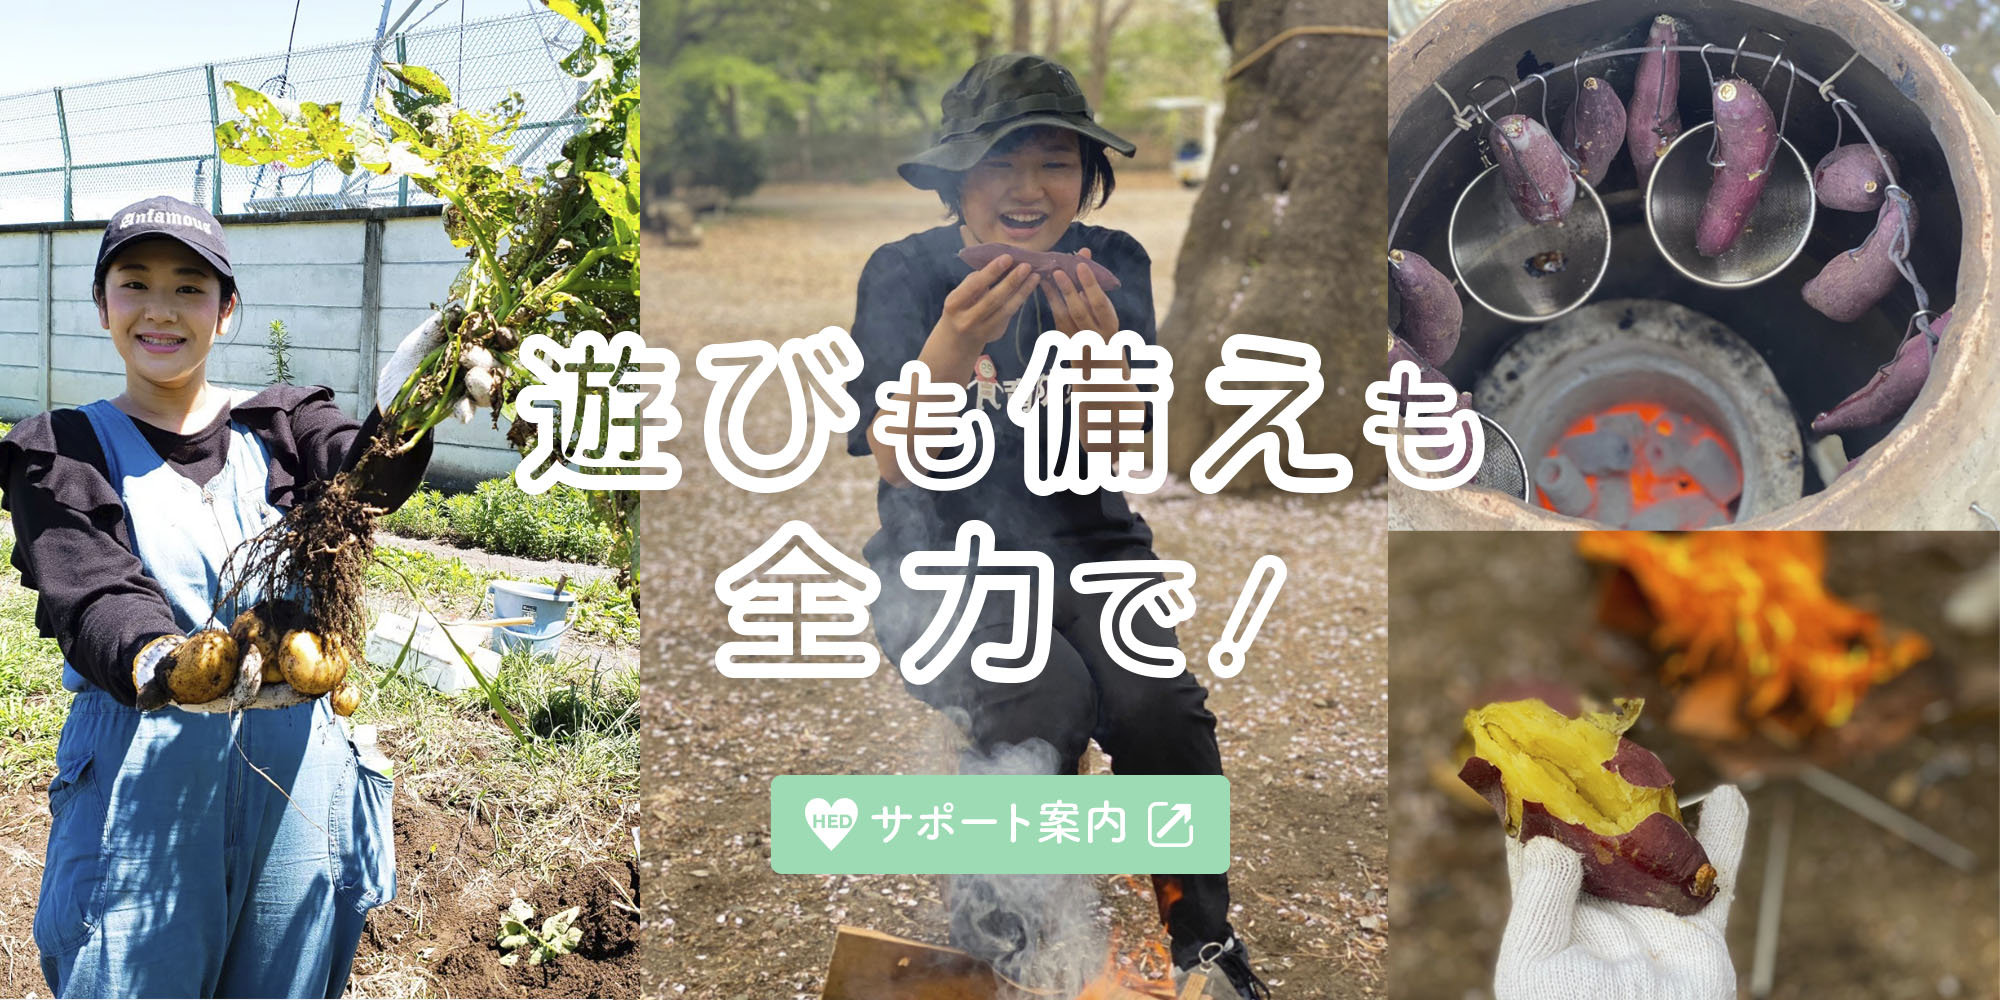 日本食育防災士 サポート